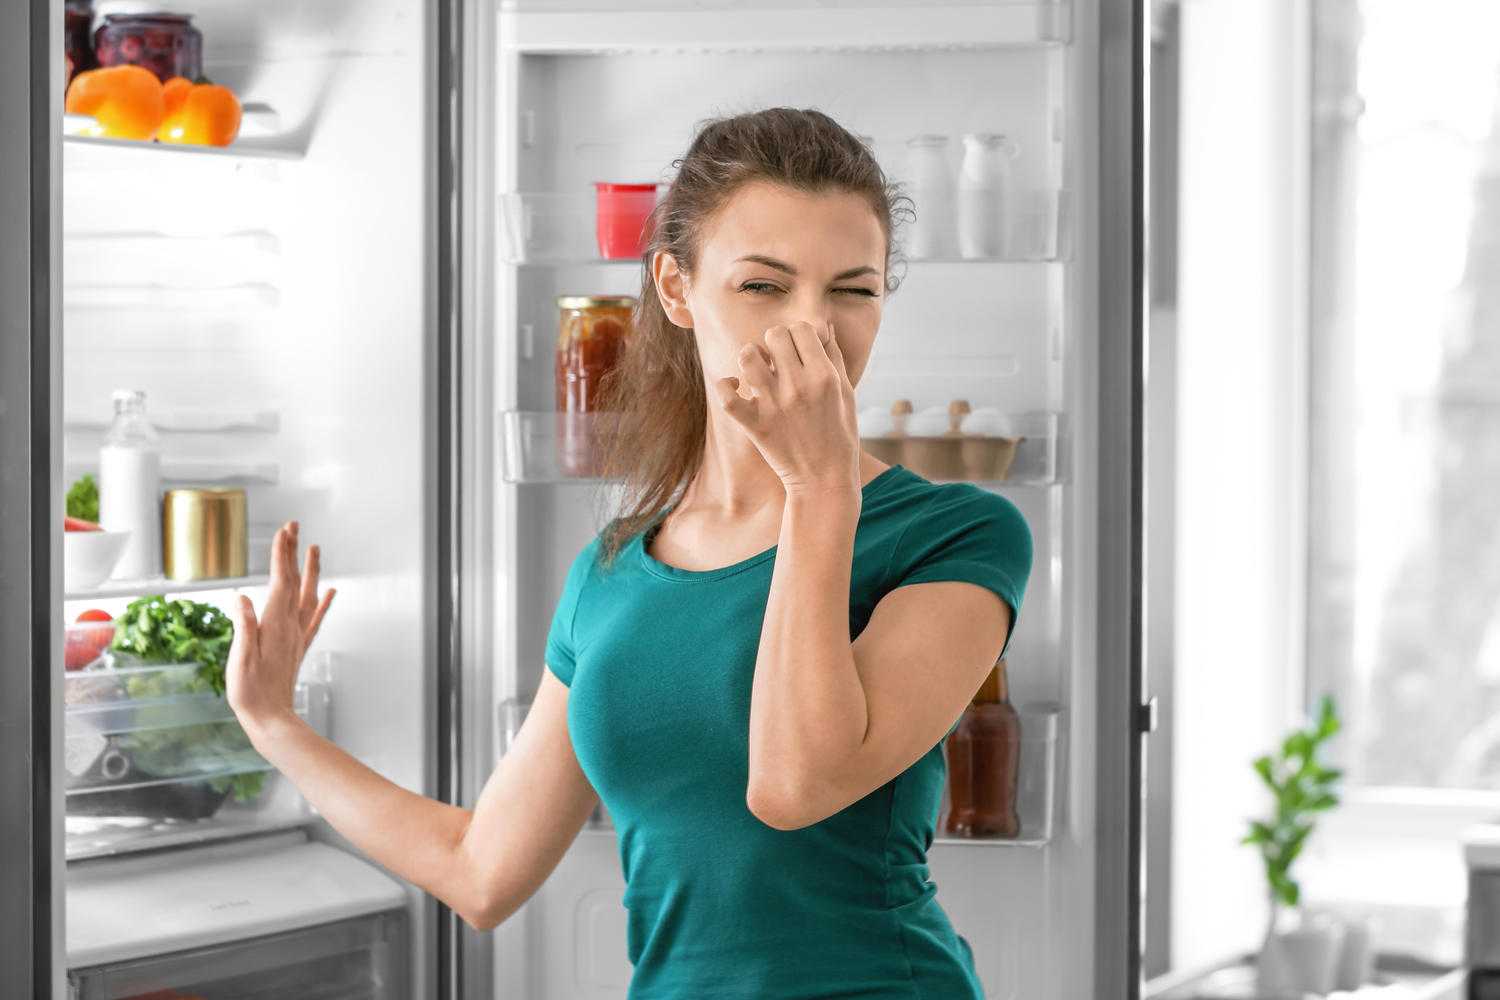 Воздух пахнет свежестью. Запах в холодильнике. Запах из холодильника. Неприятный запах в холодильнике. Испорченные продукты в холодильнике.